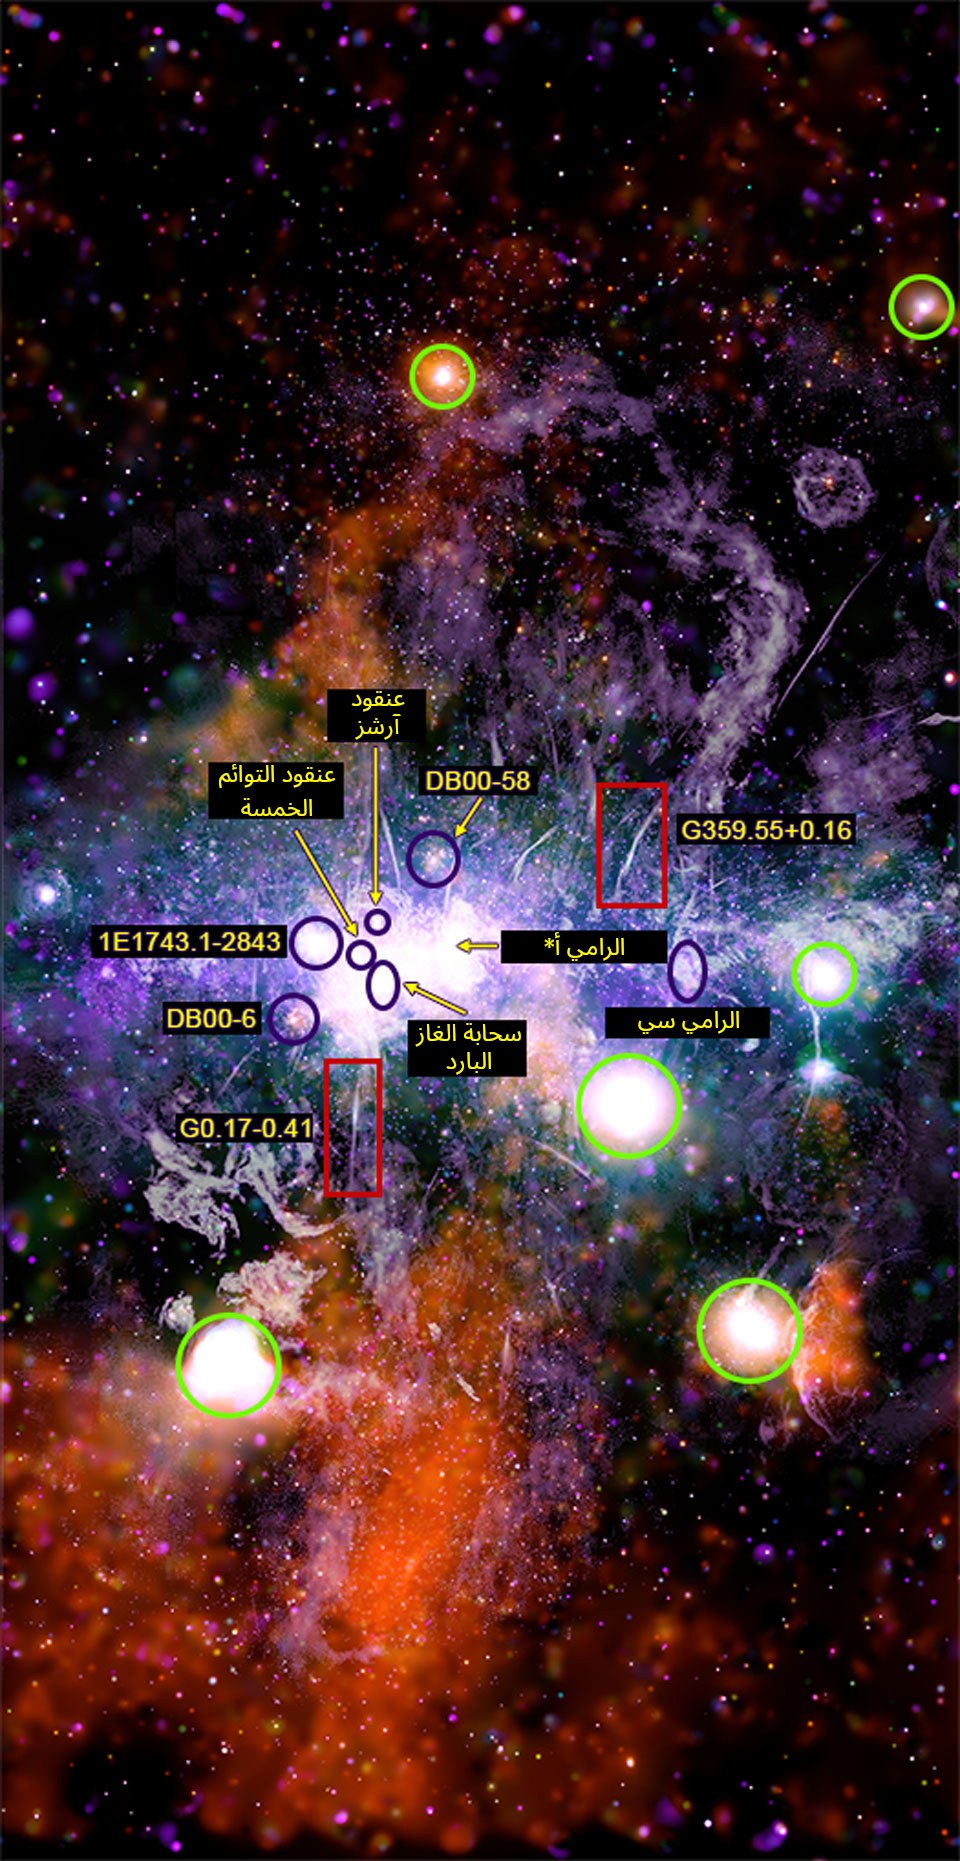 صورة لمركز مجرتنا عنونت فيها أجسام كونيّة منها من الأعلى للأسفل: العناقيد النجميّة آرشز، والتوائم الخمسة، وَ DB00-58، خيط الأشعّة السينيّة G359.55+0.16، ثنائي أشعّة إكس 1E1743.1-2843، منطقة الرامي أ* وَ المركّب الجزيئي الرامي سي، عنقود DB00-6 النجمي إضافة إلى سحابة غاز باردة وخيط الأشعة السينية G0.17-0.41.